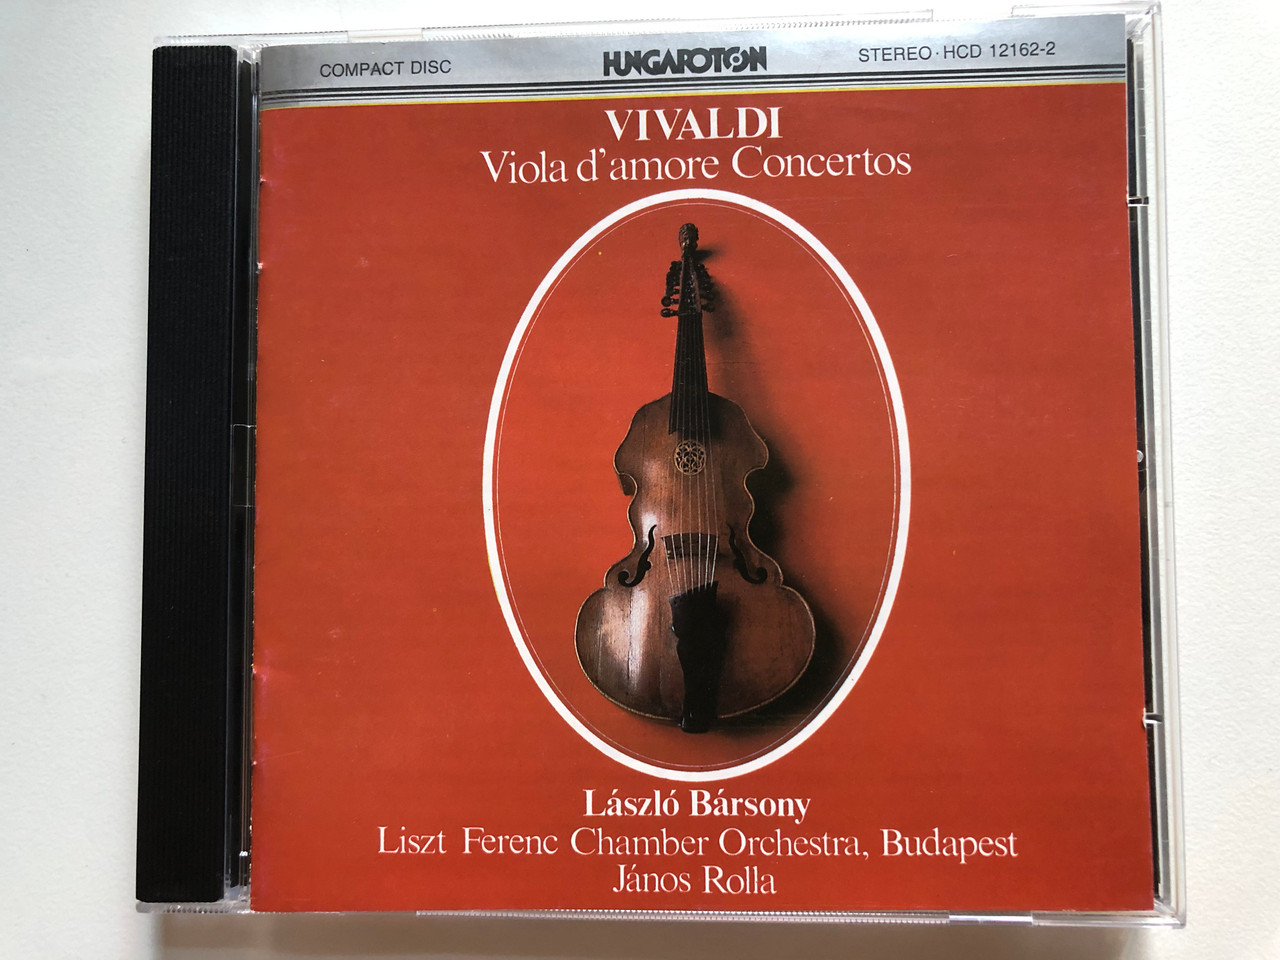 Vivaldi - Viola d'amore Concertos / László Bársony, Liszt Ferenc Chamber  Orchestra,Budapest, János Rolla / Hungaroton Audio CD 1980 Stereo / HCD  12162-2 - bibleinmylanguage